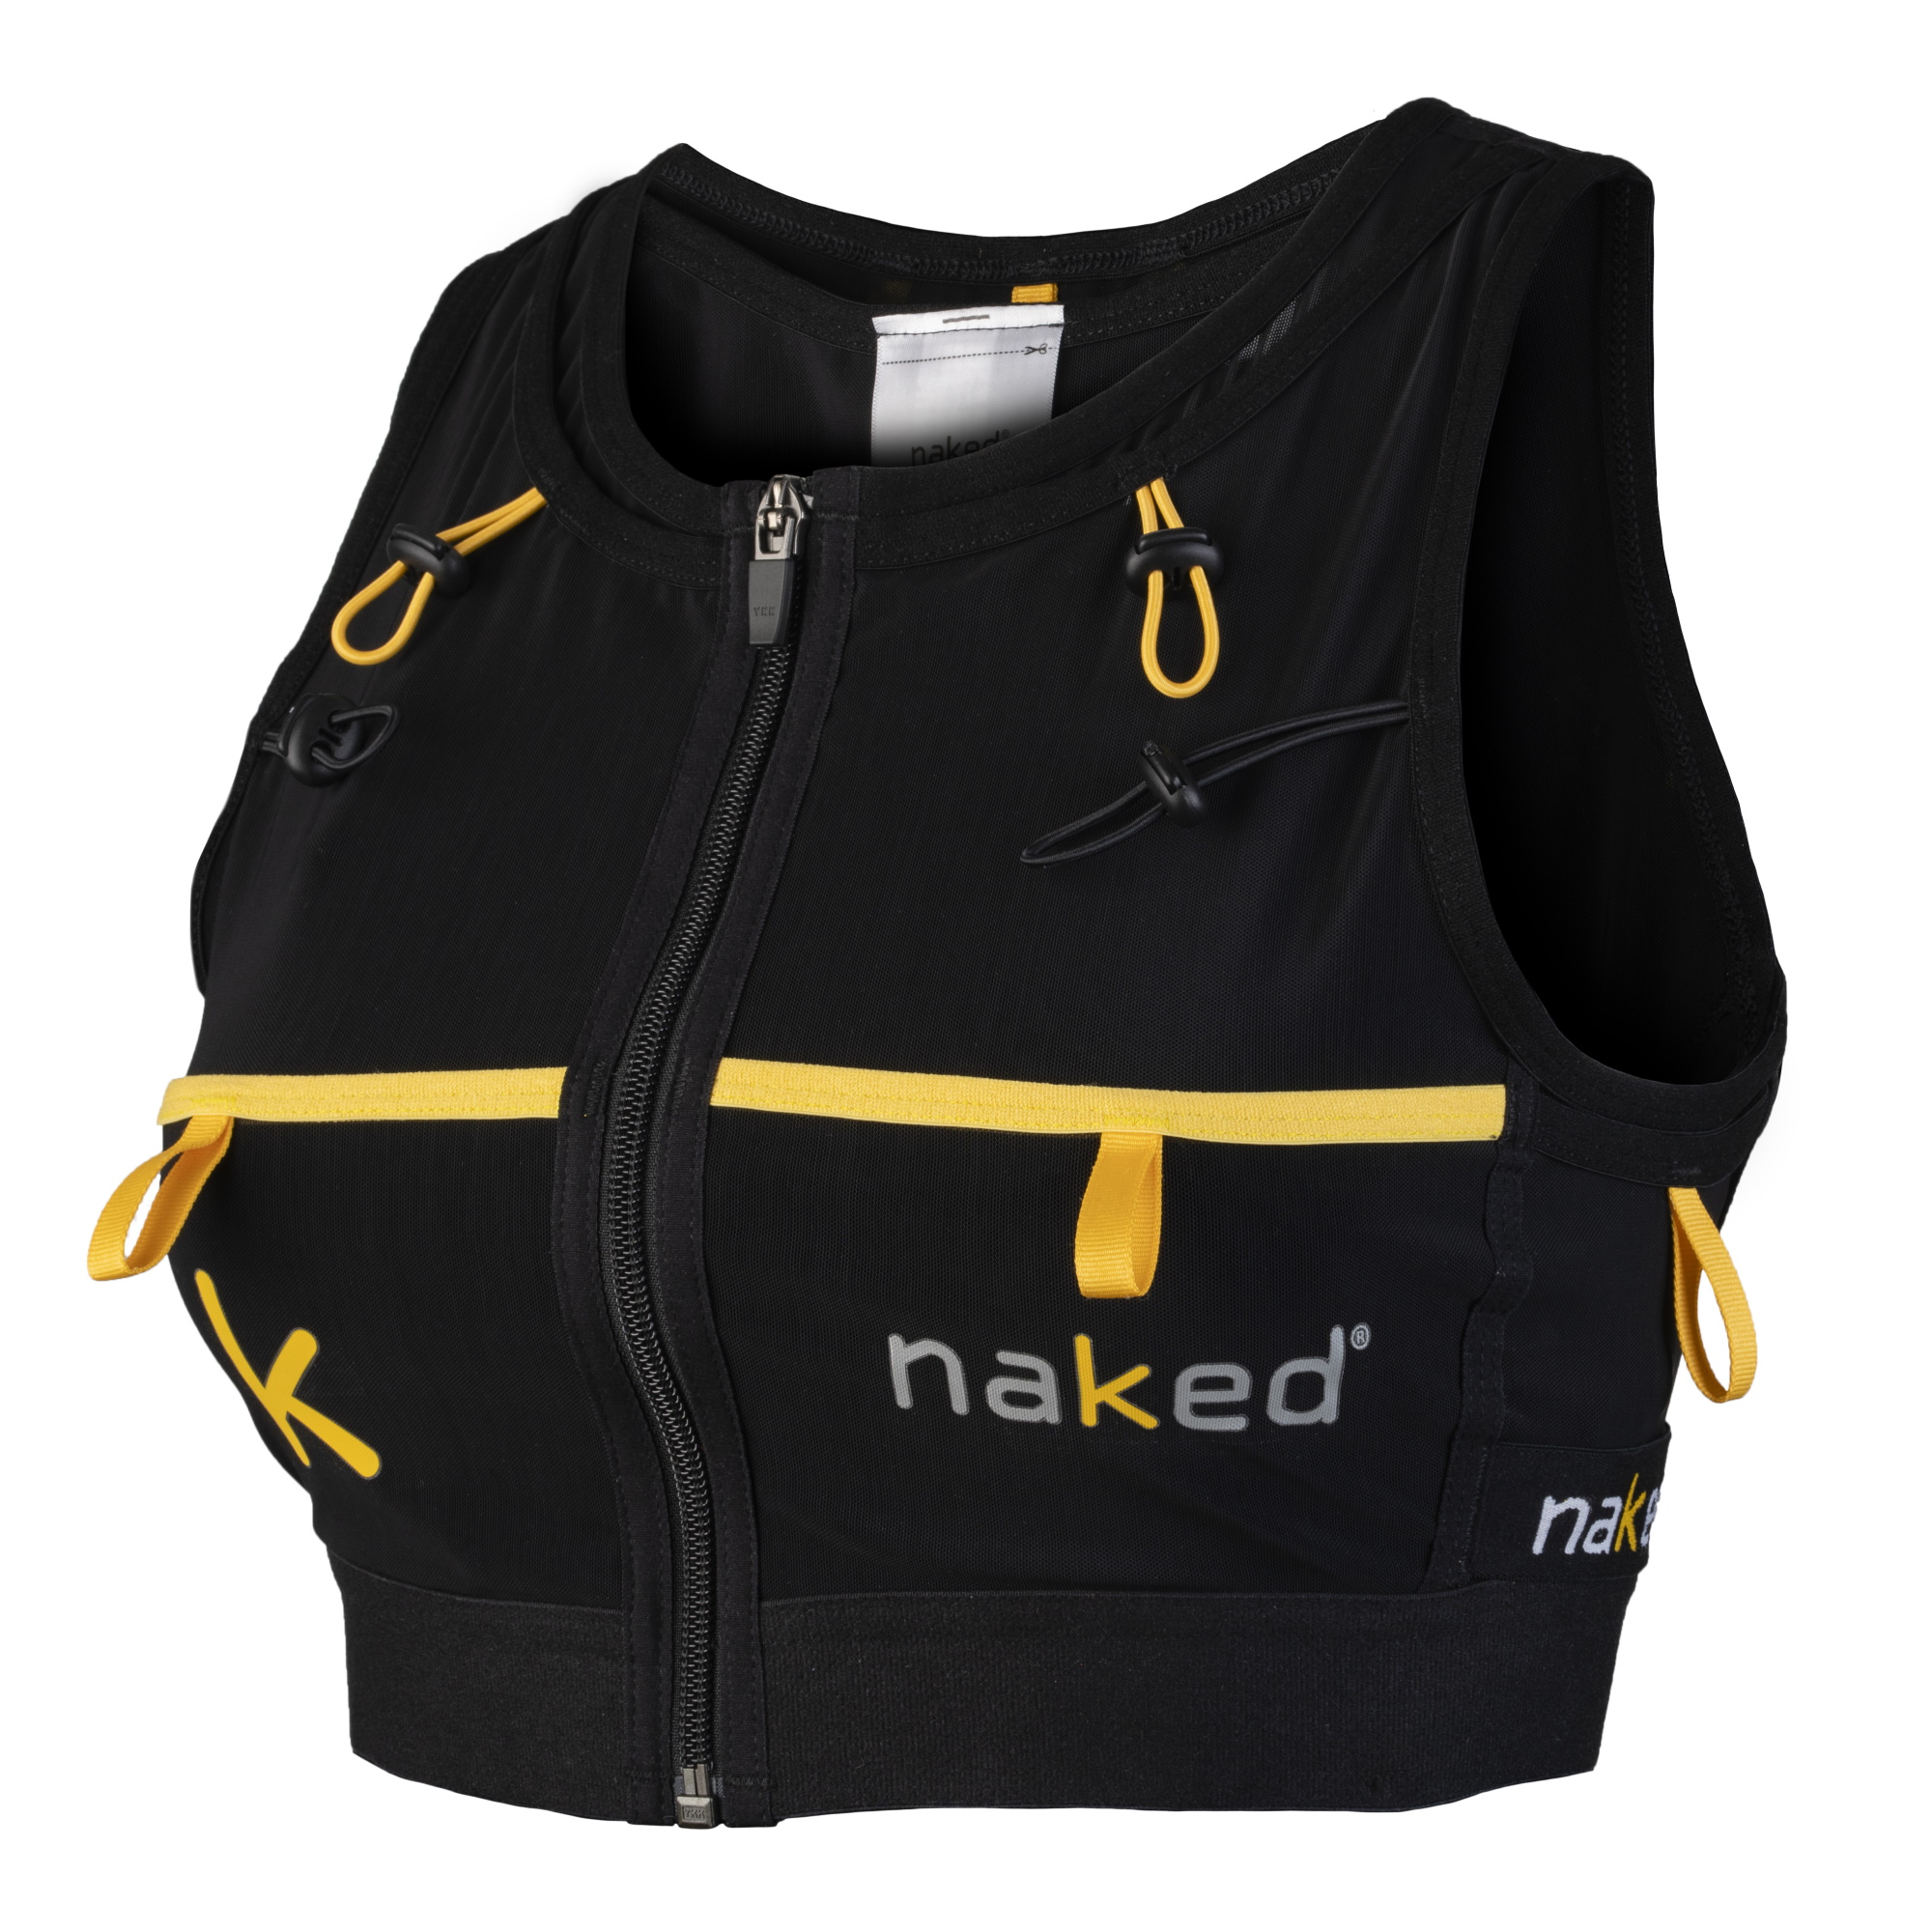 Naked Hc Women's Running Vest Black 10, Black